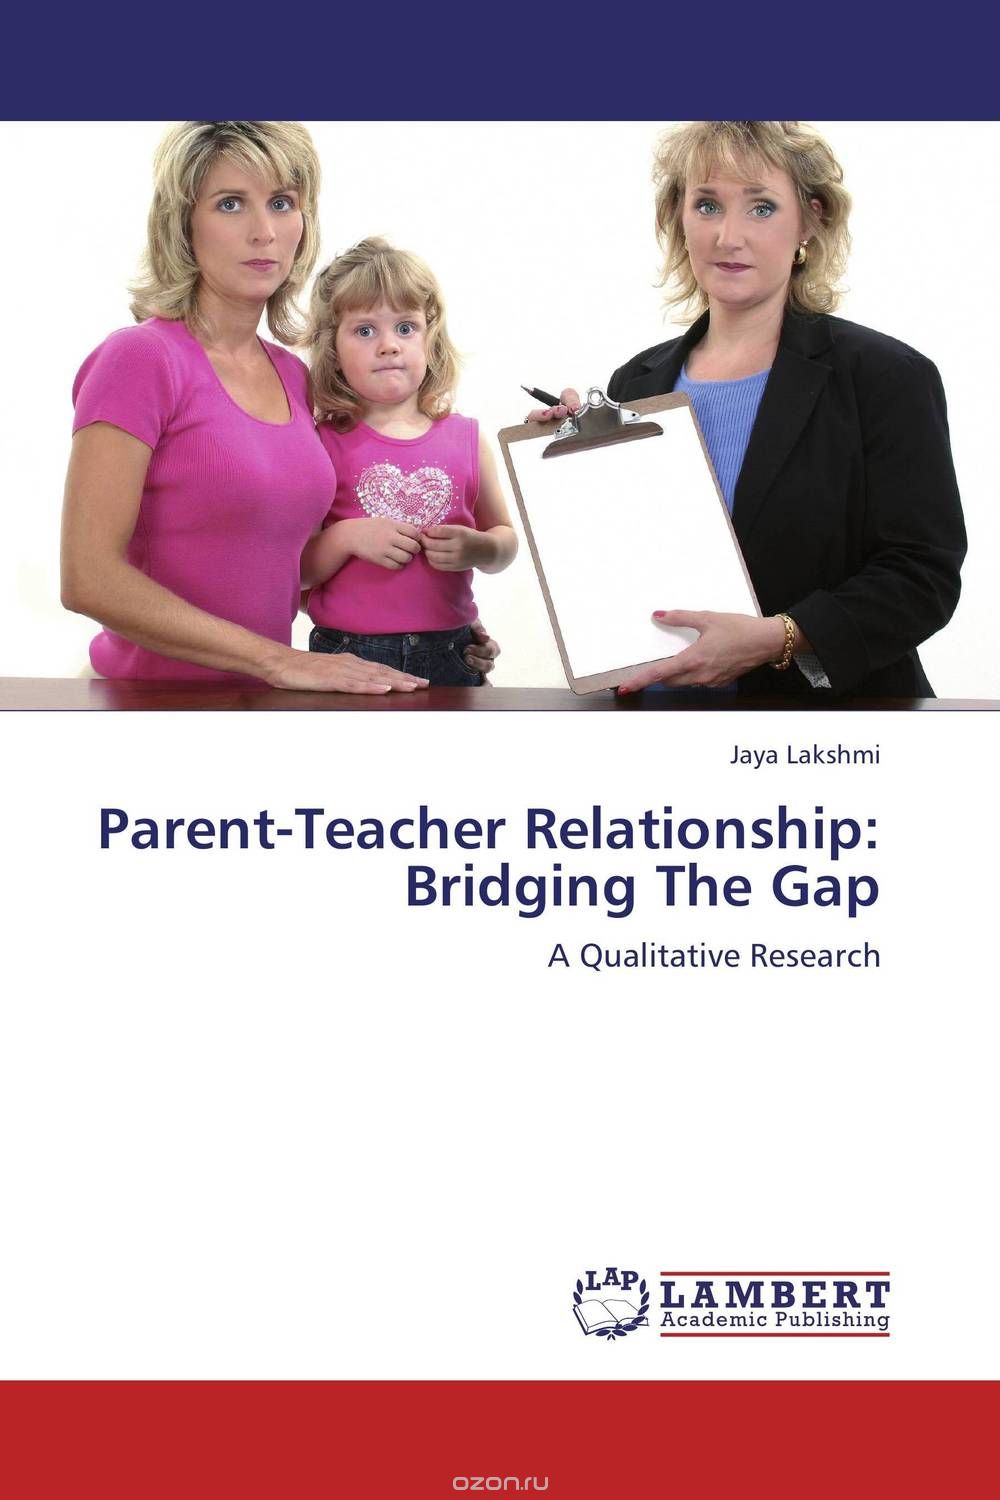 Скачать книгу "Parent-Teacher Relationship: Bridging The Gap"